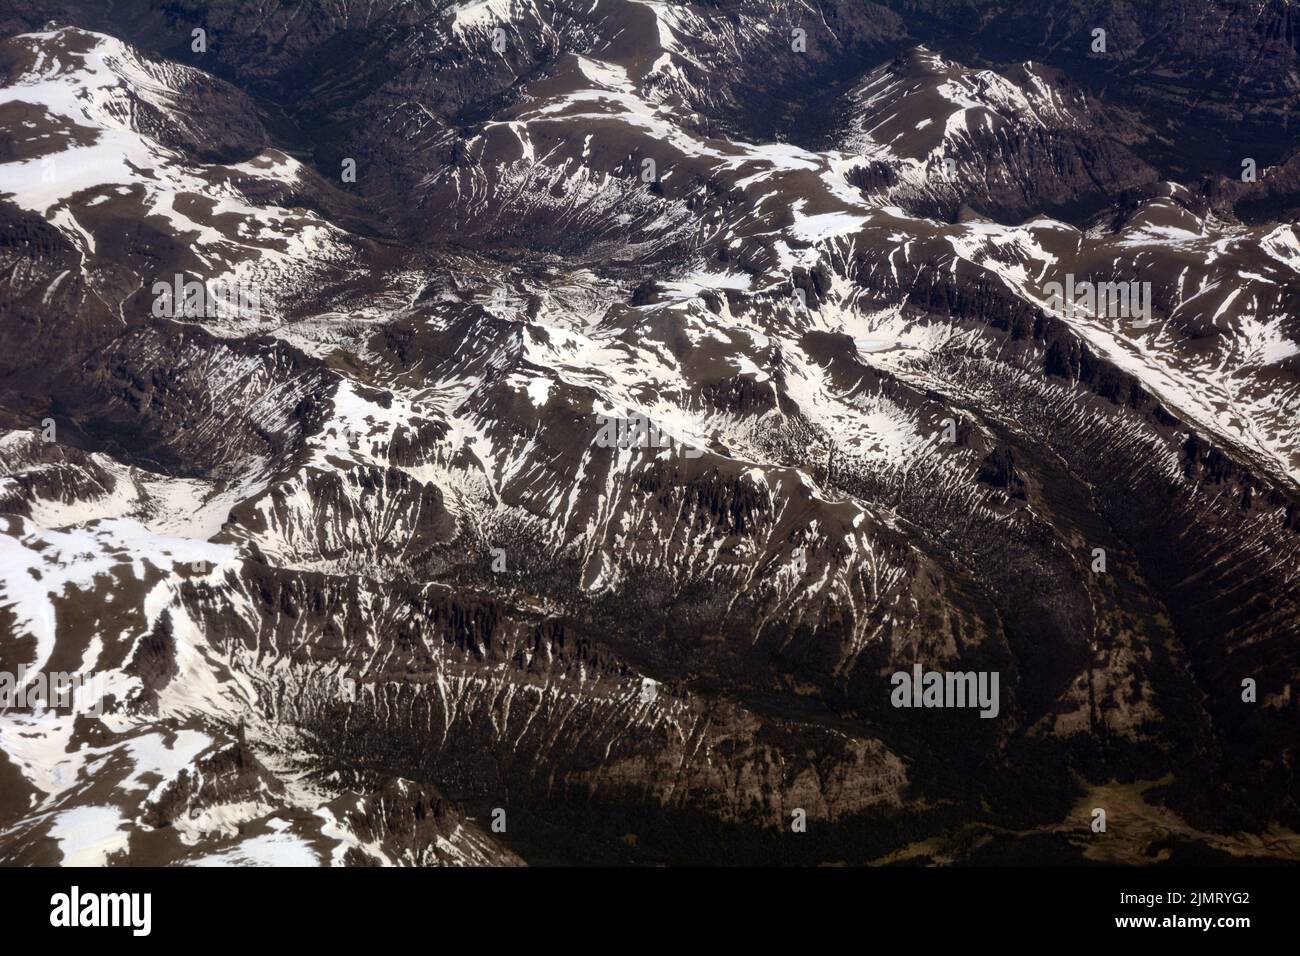 Vista aérea del Bosque Nacional Shoshone y las Montañas Absaroka, una sub-cordillera de las Montañas Rocosas, en el noroeste de Wyoming, Estados Unidos. Foto de stock